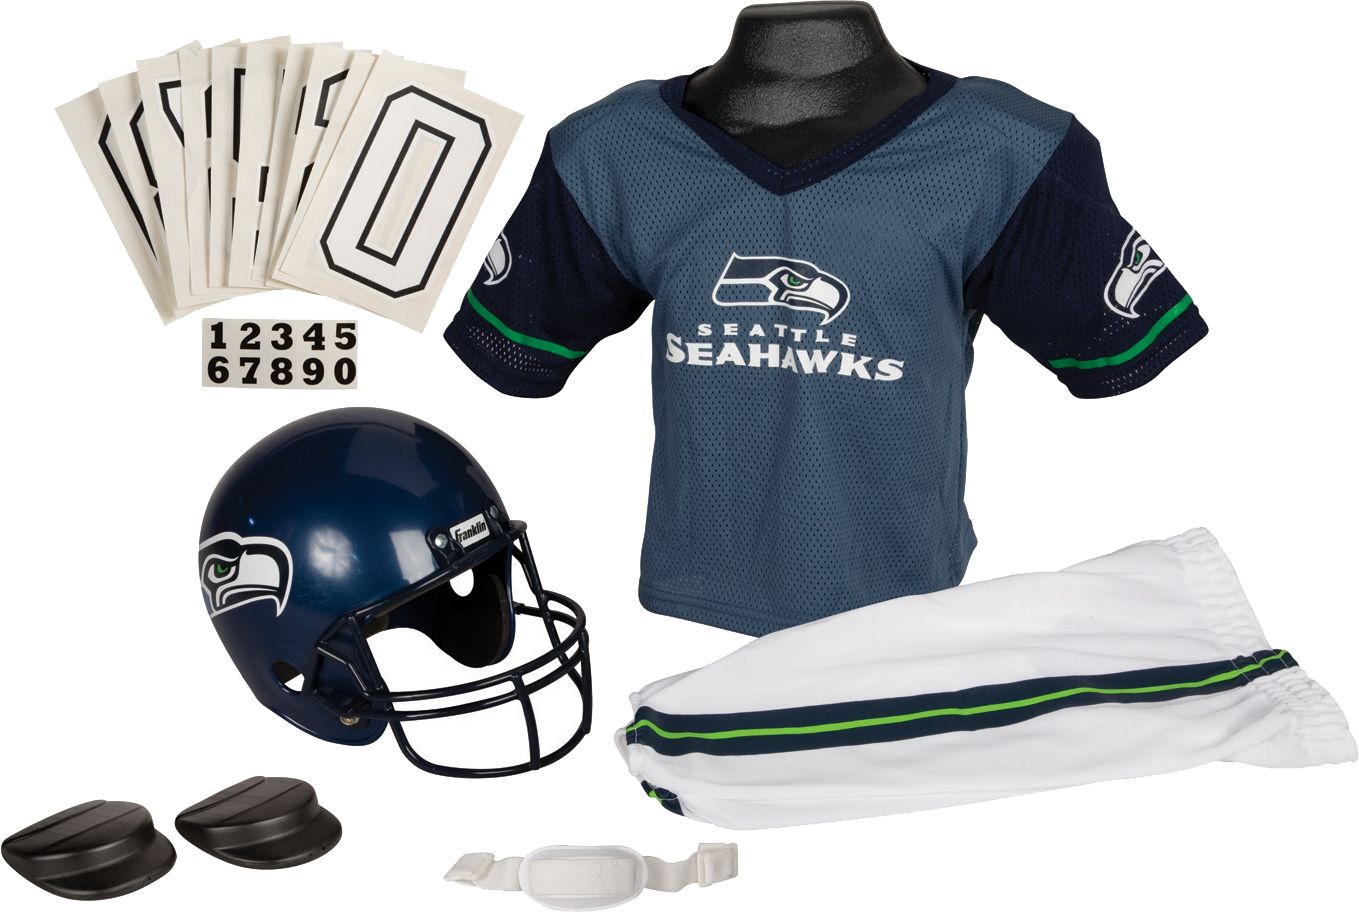 seattle seahawks helmet and jersey